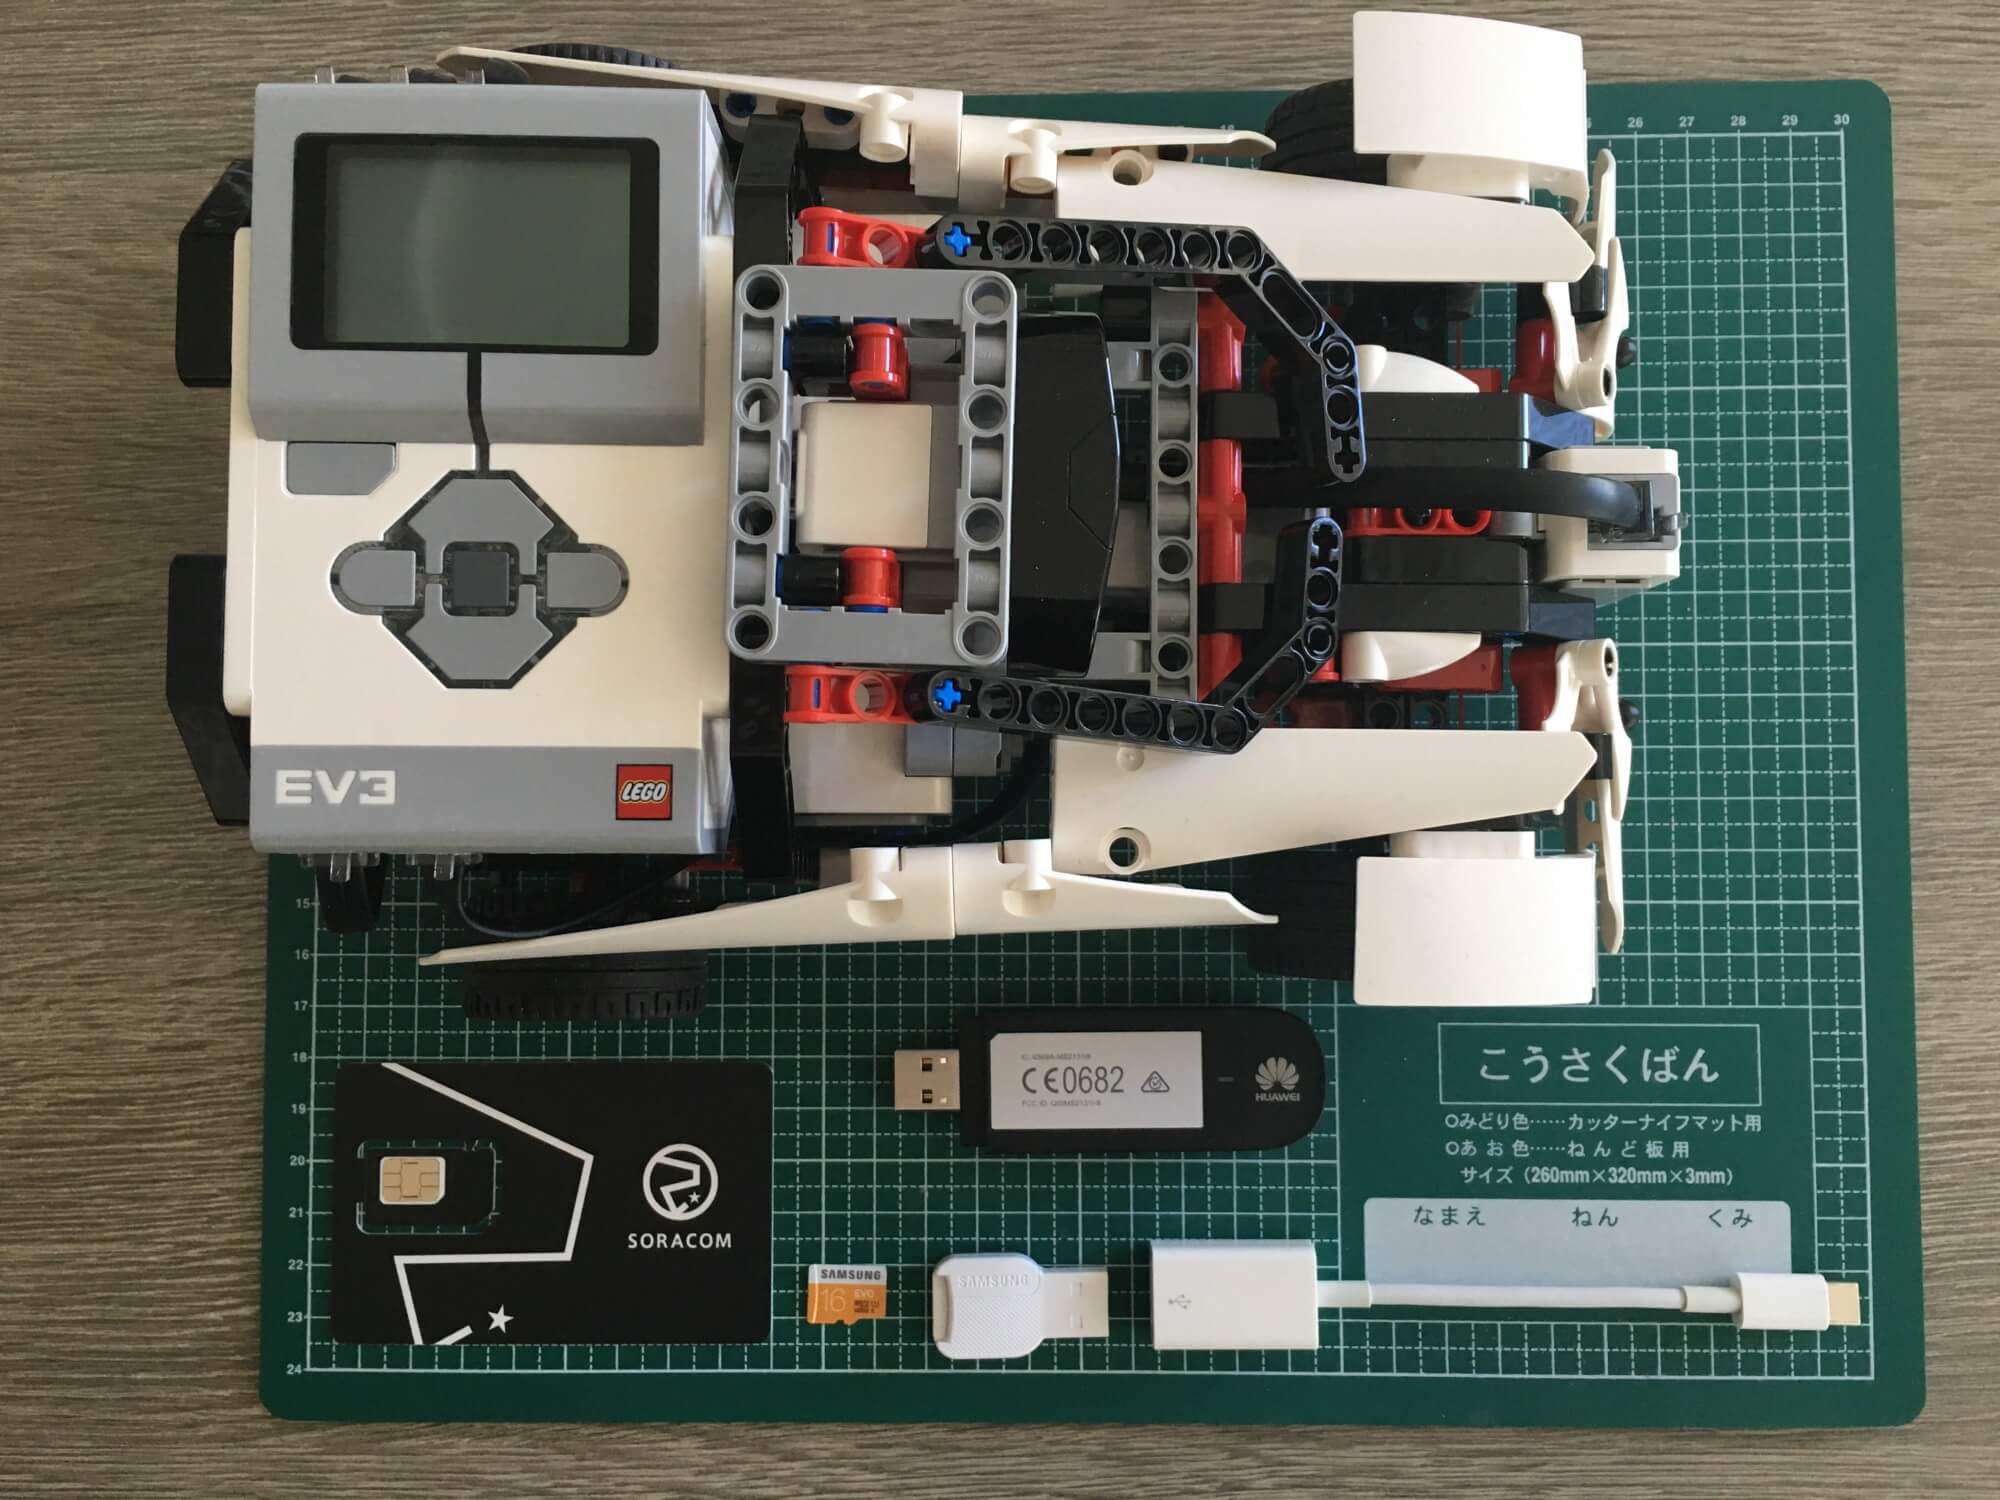 LEGO EV3 and Soracom - Connecting Robotics to the Soracom